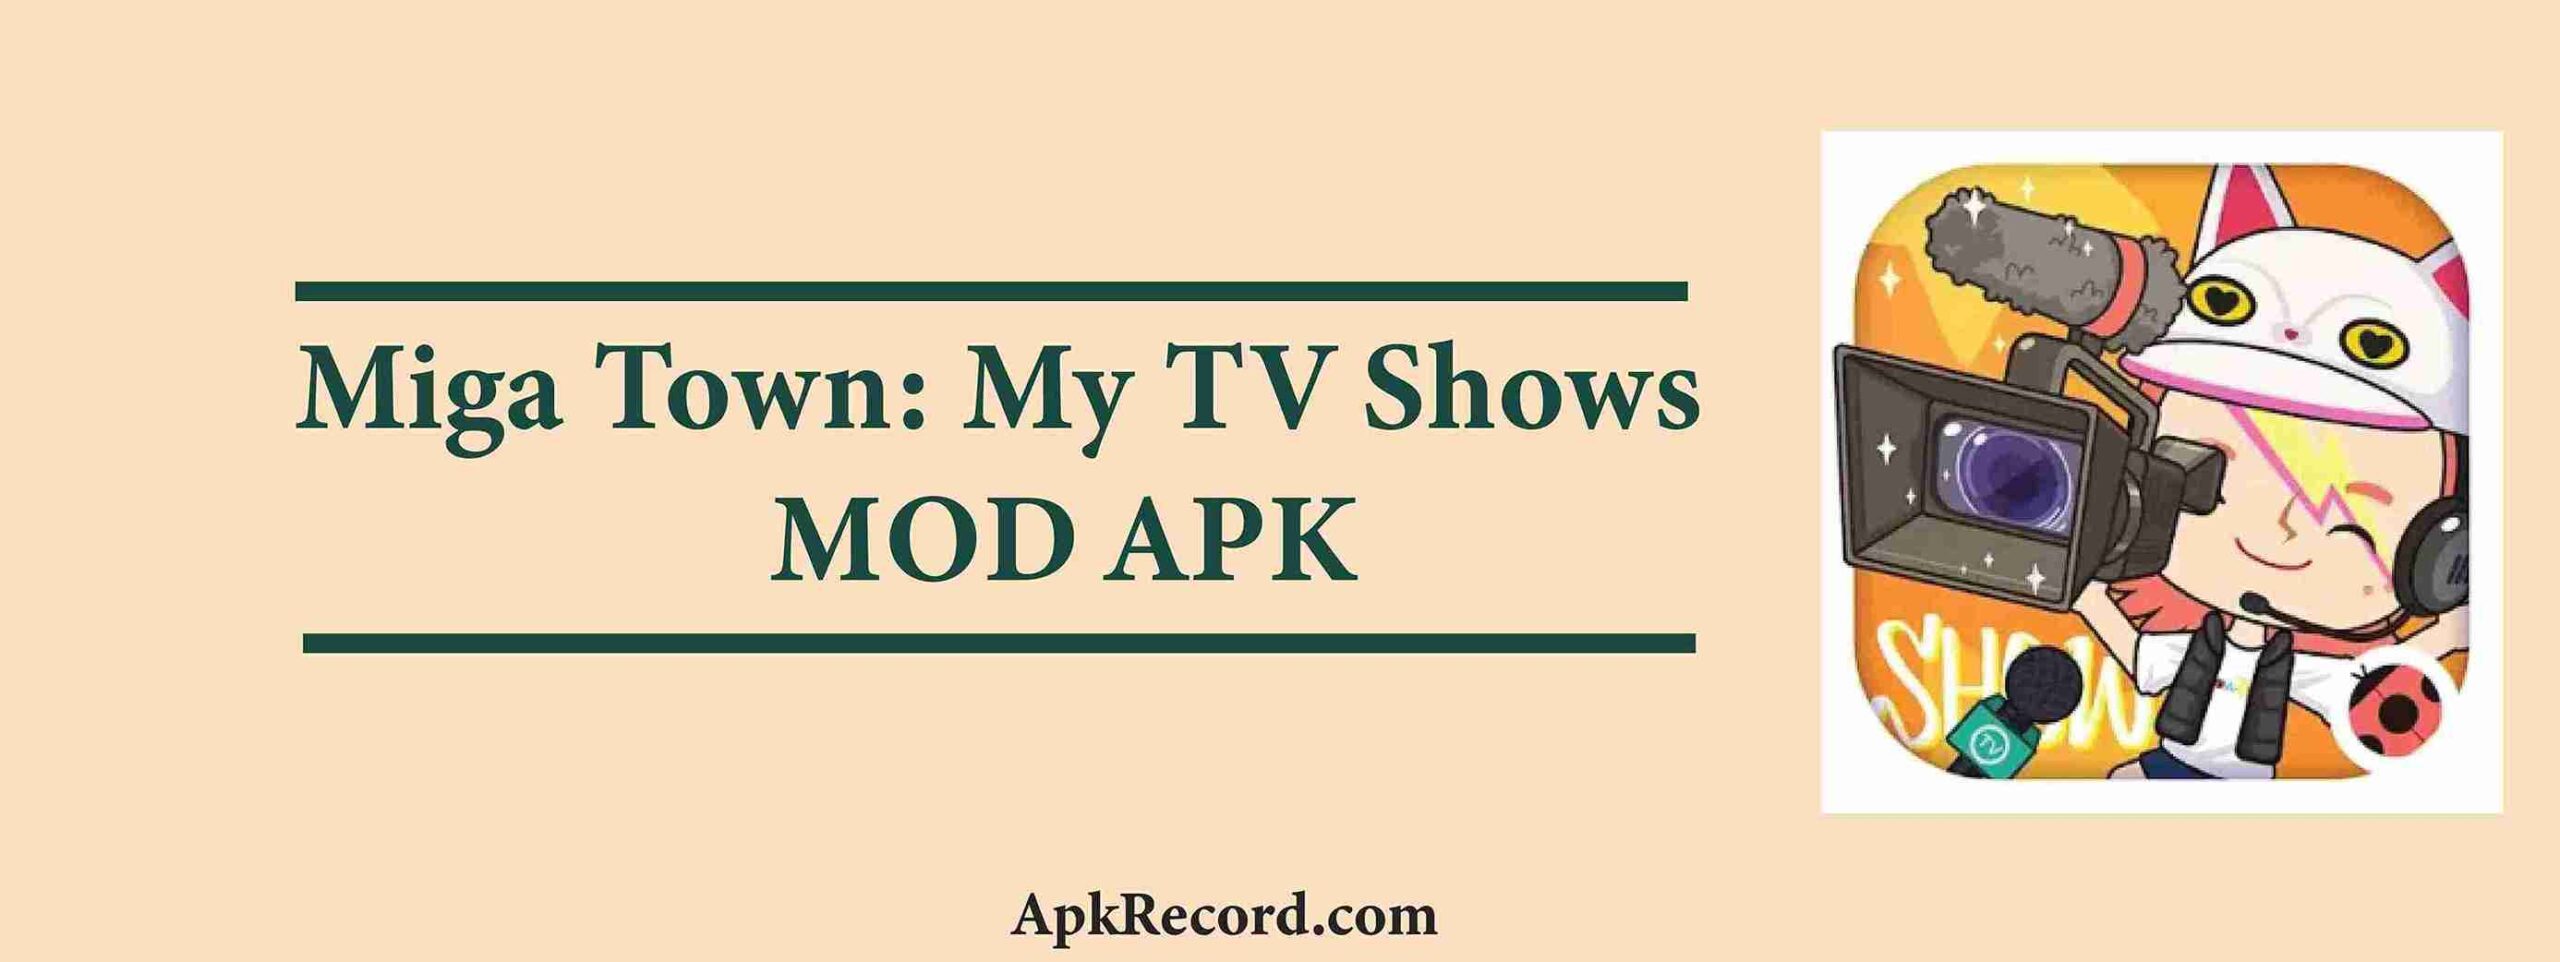 Miga Town: My TV Shows MOD APK V1.7